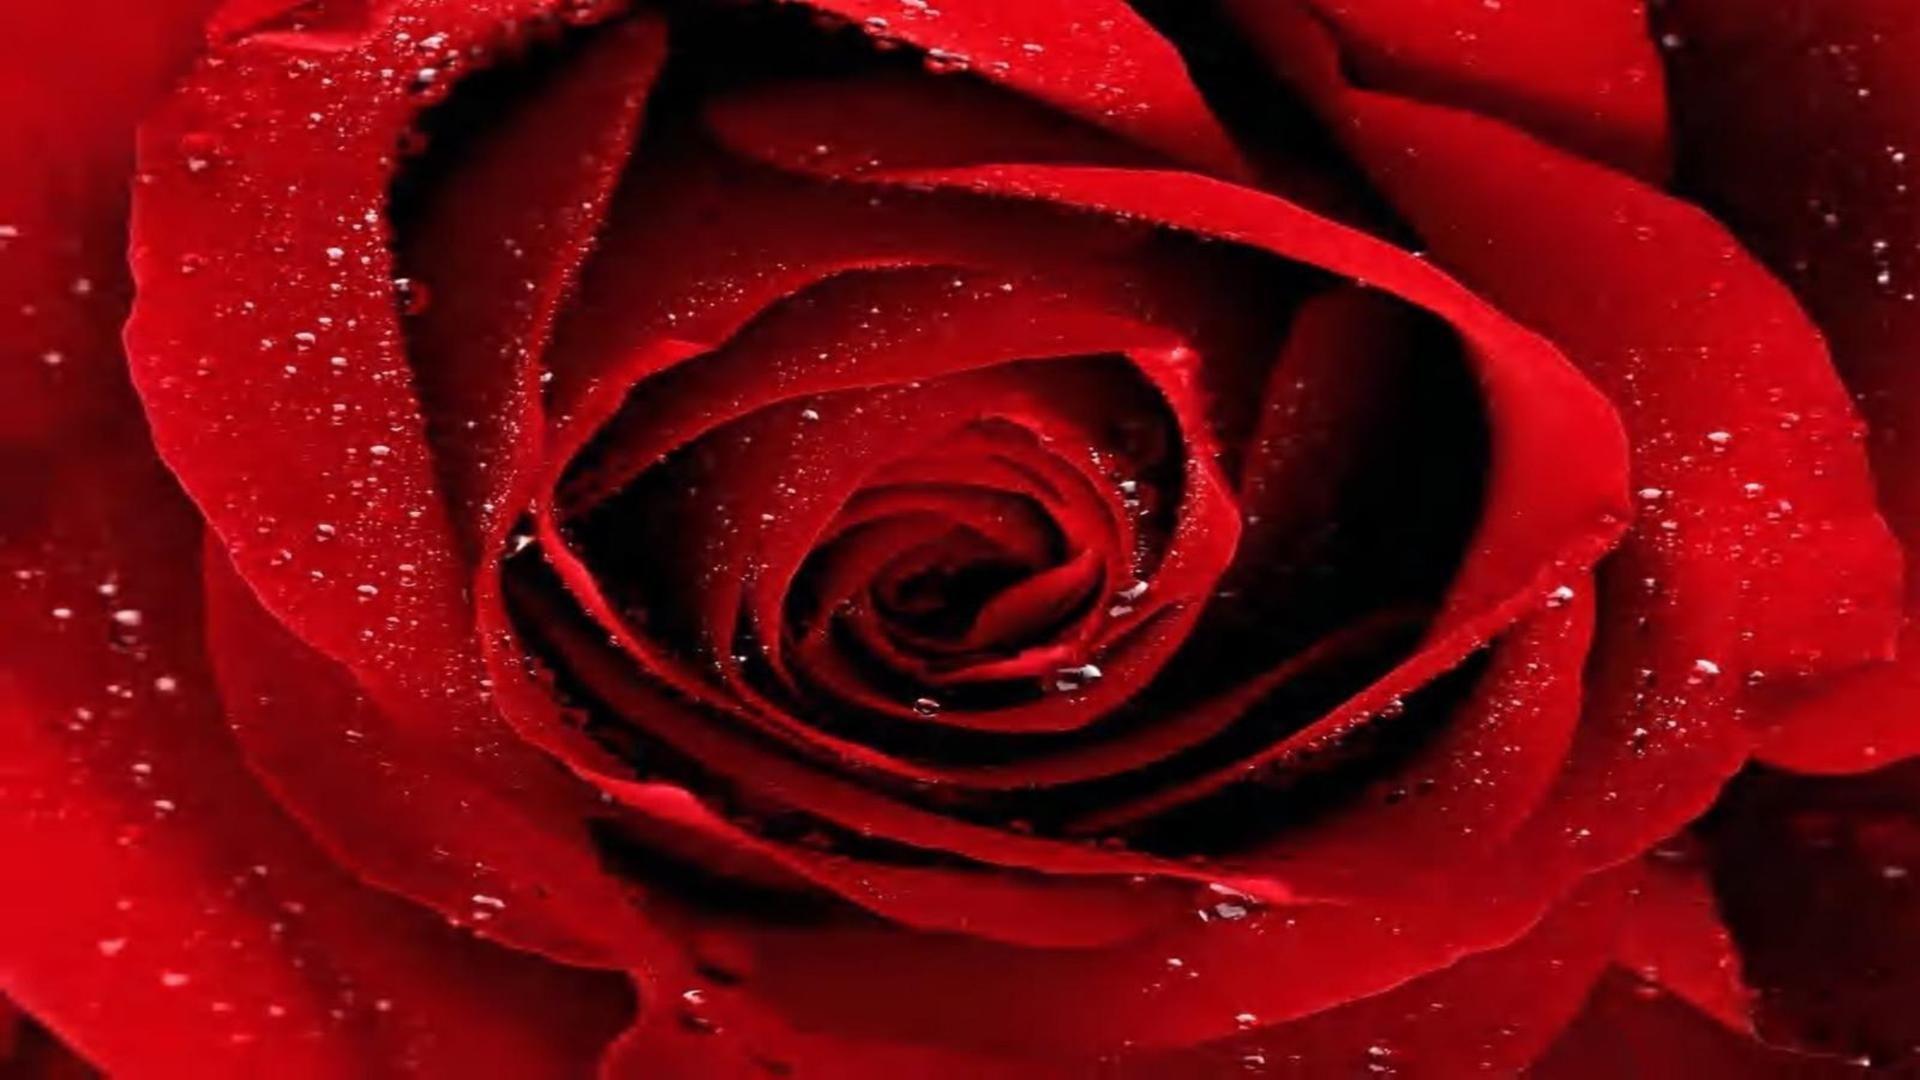 Red rose on black background macro look free desktop background